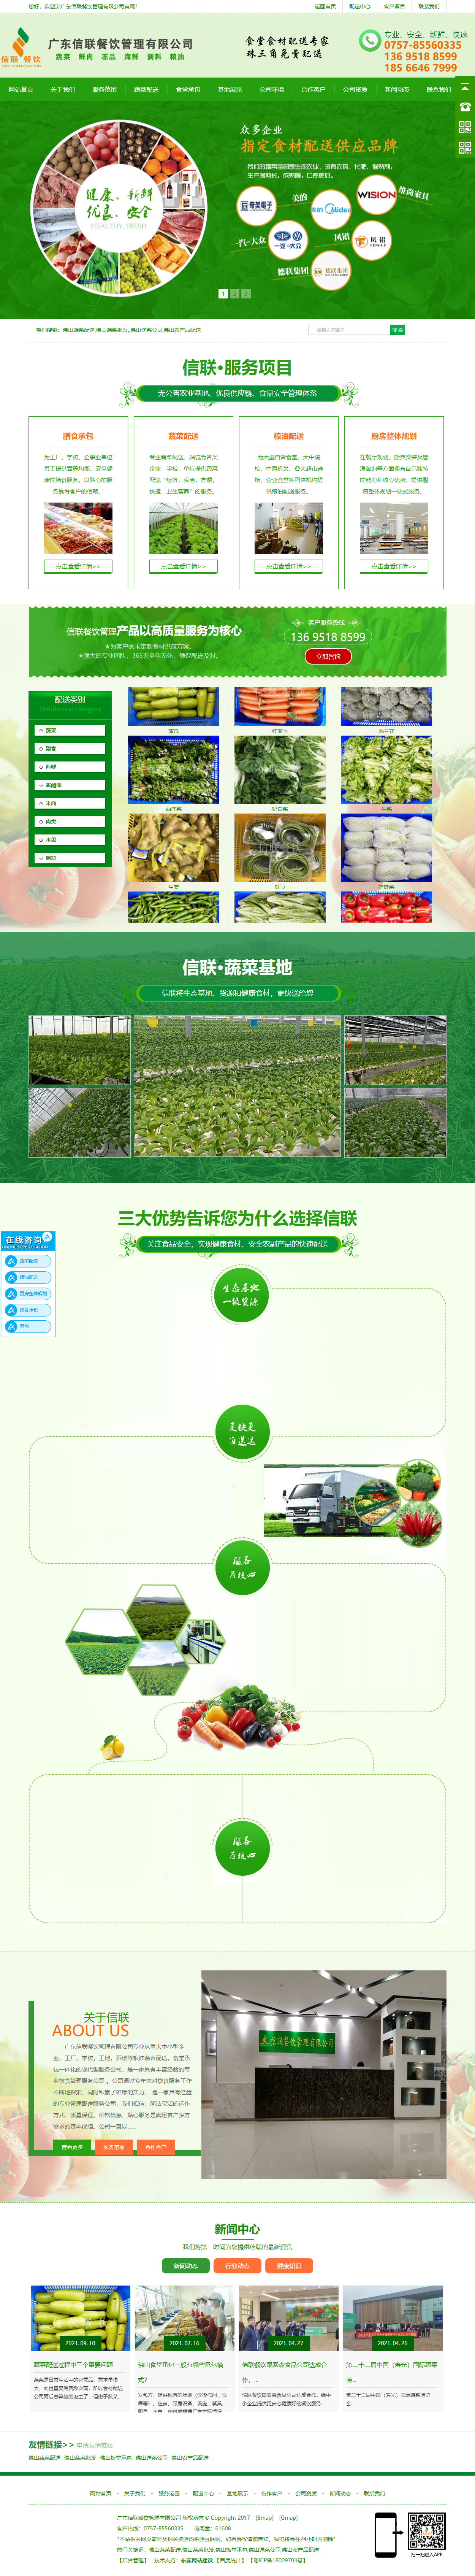 广东信联餐饮管理有限公司网站案例